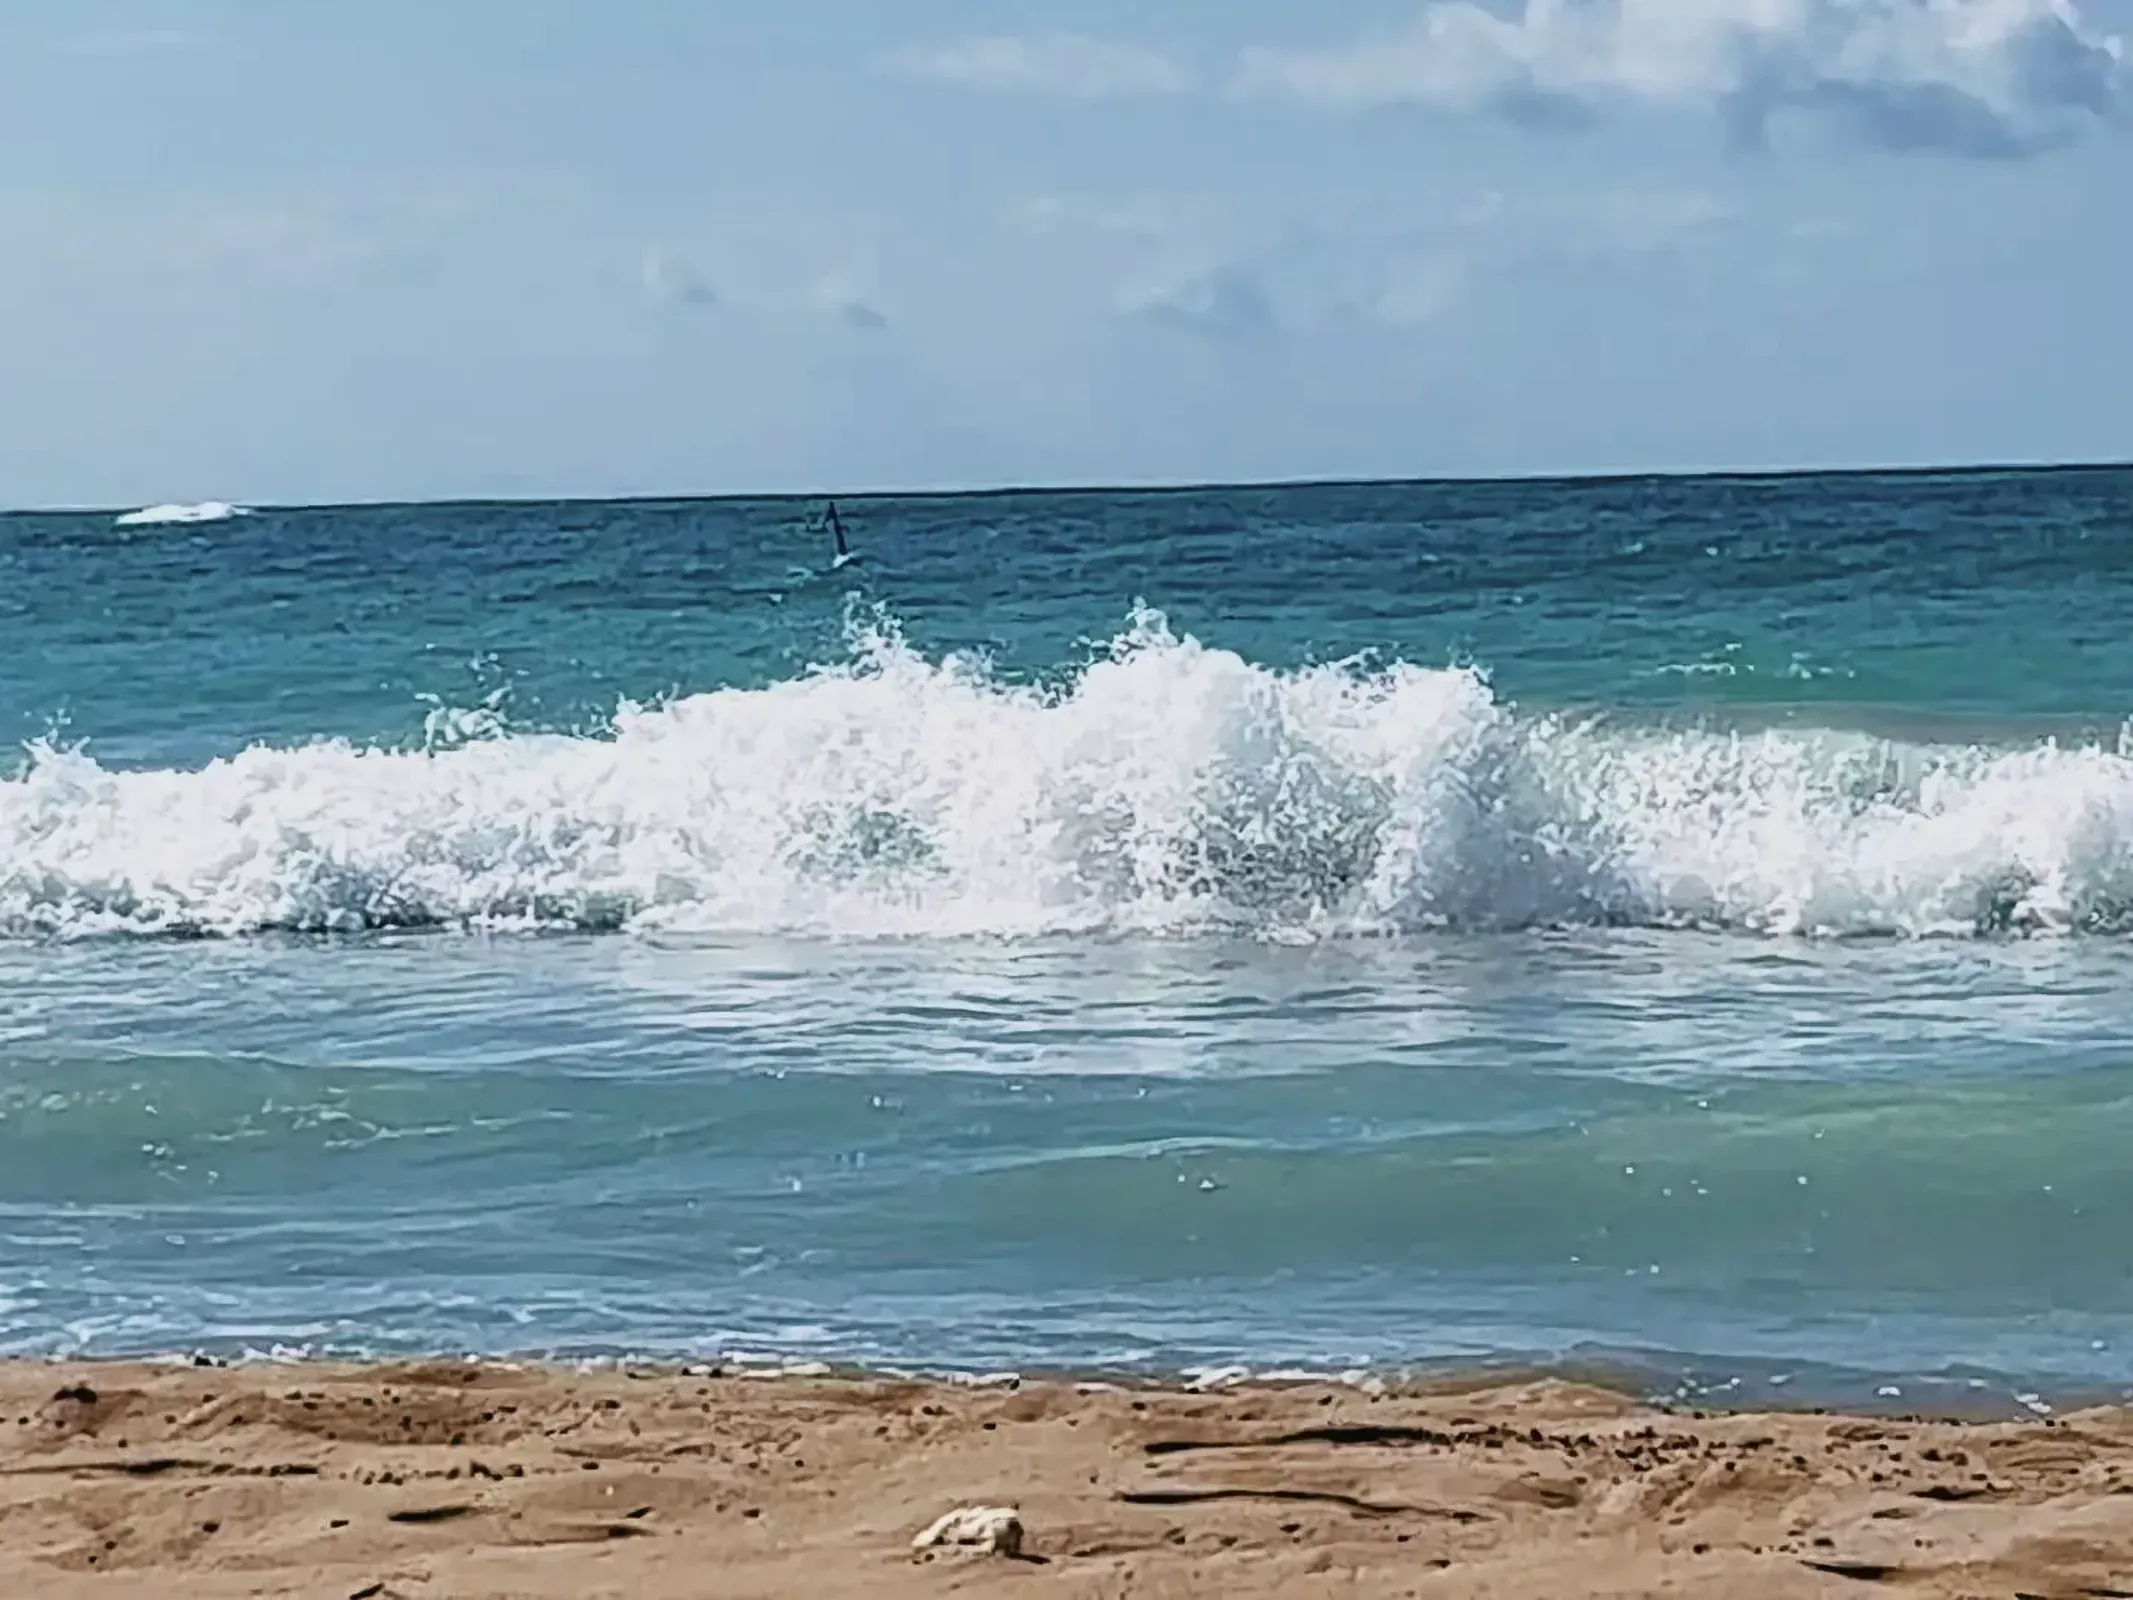 Captivating coastal landscape with powerful waves crashing onto sandy beach.